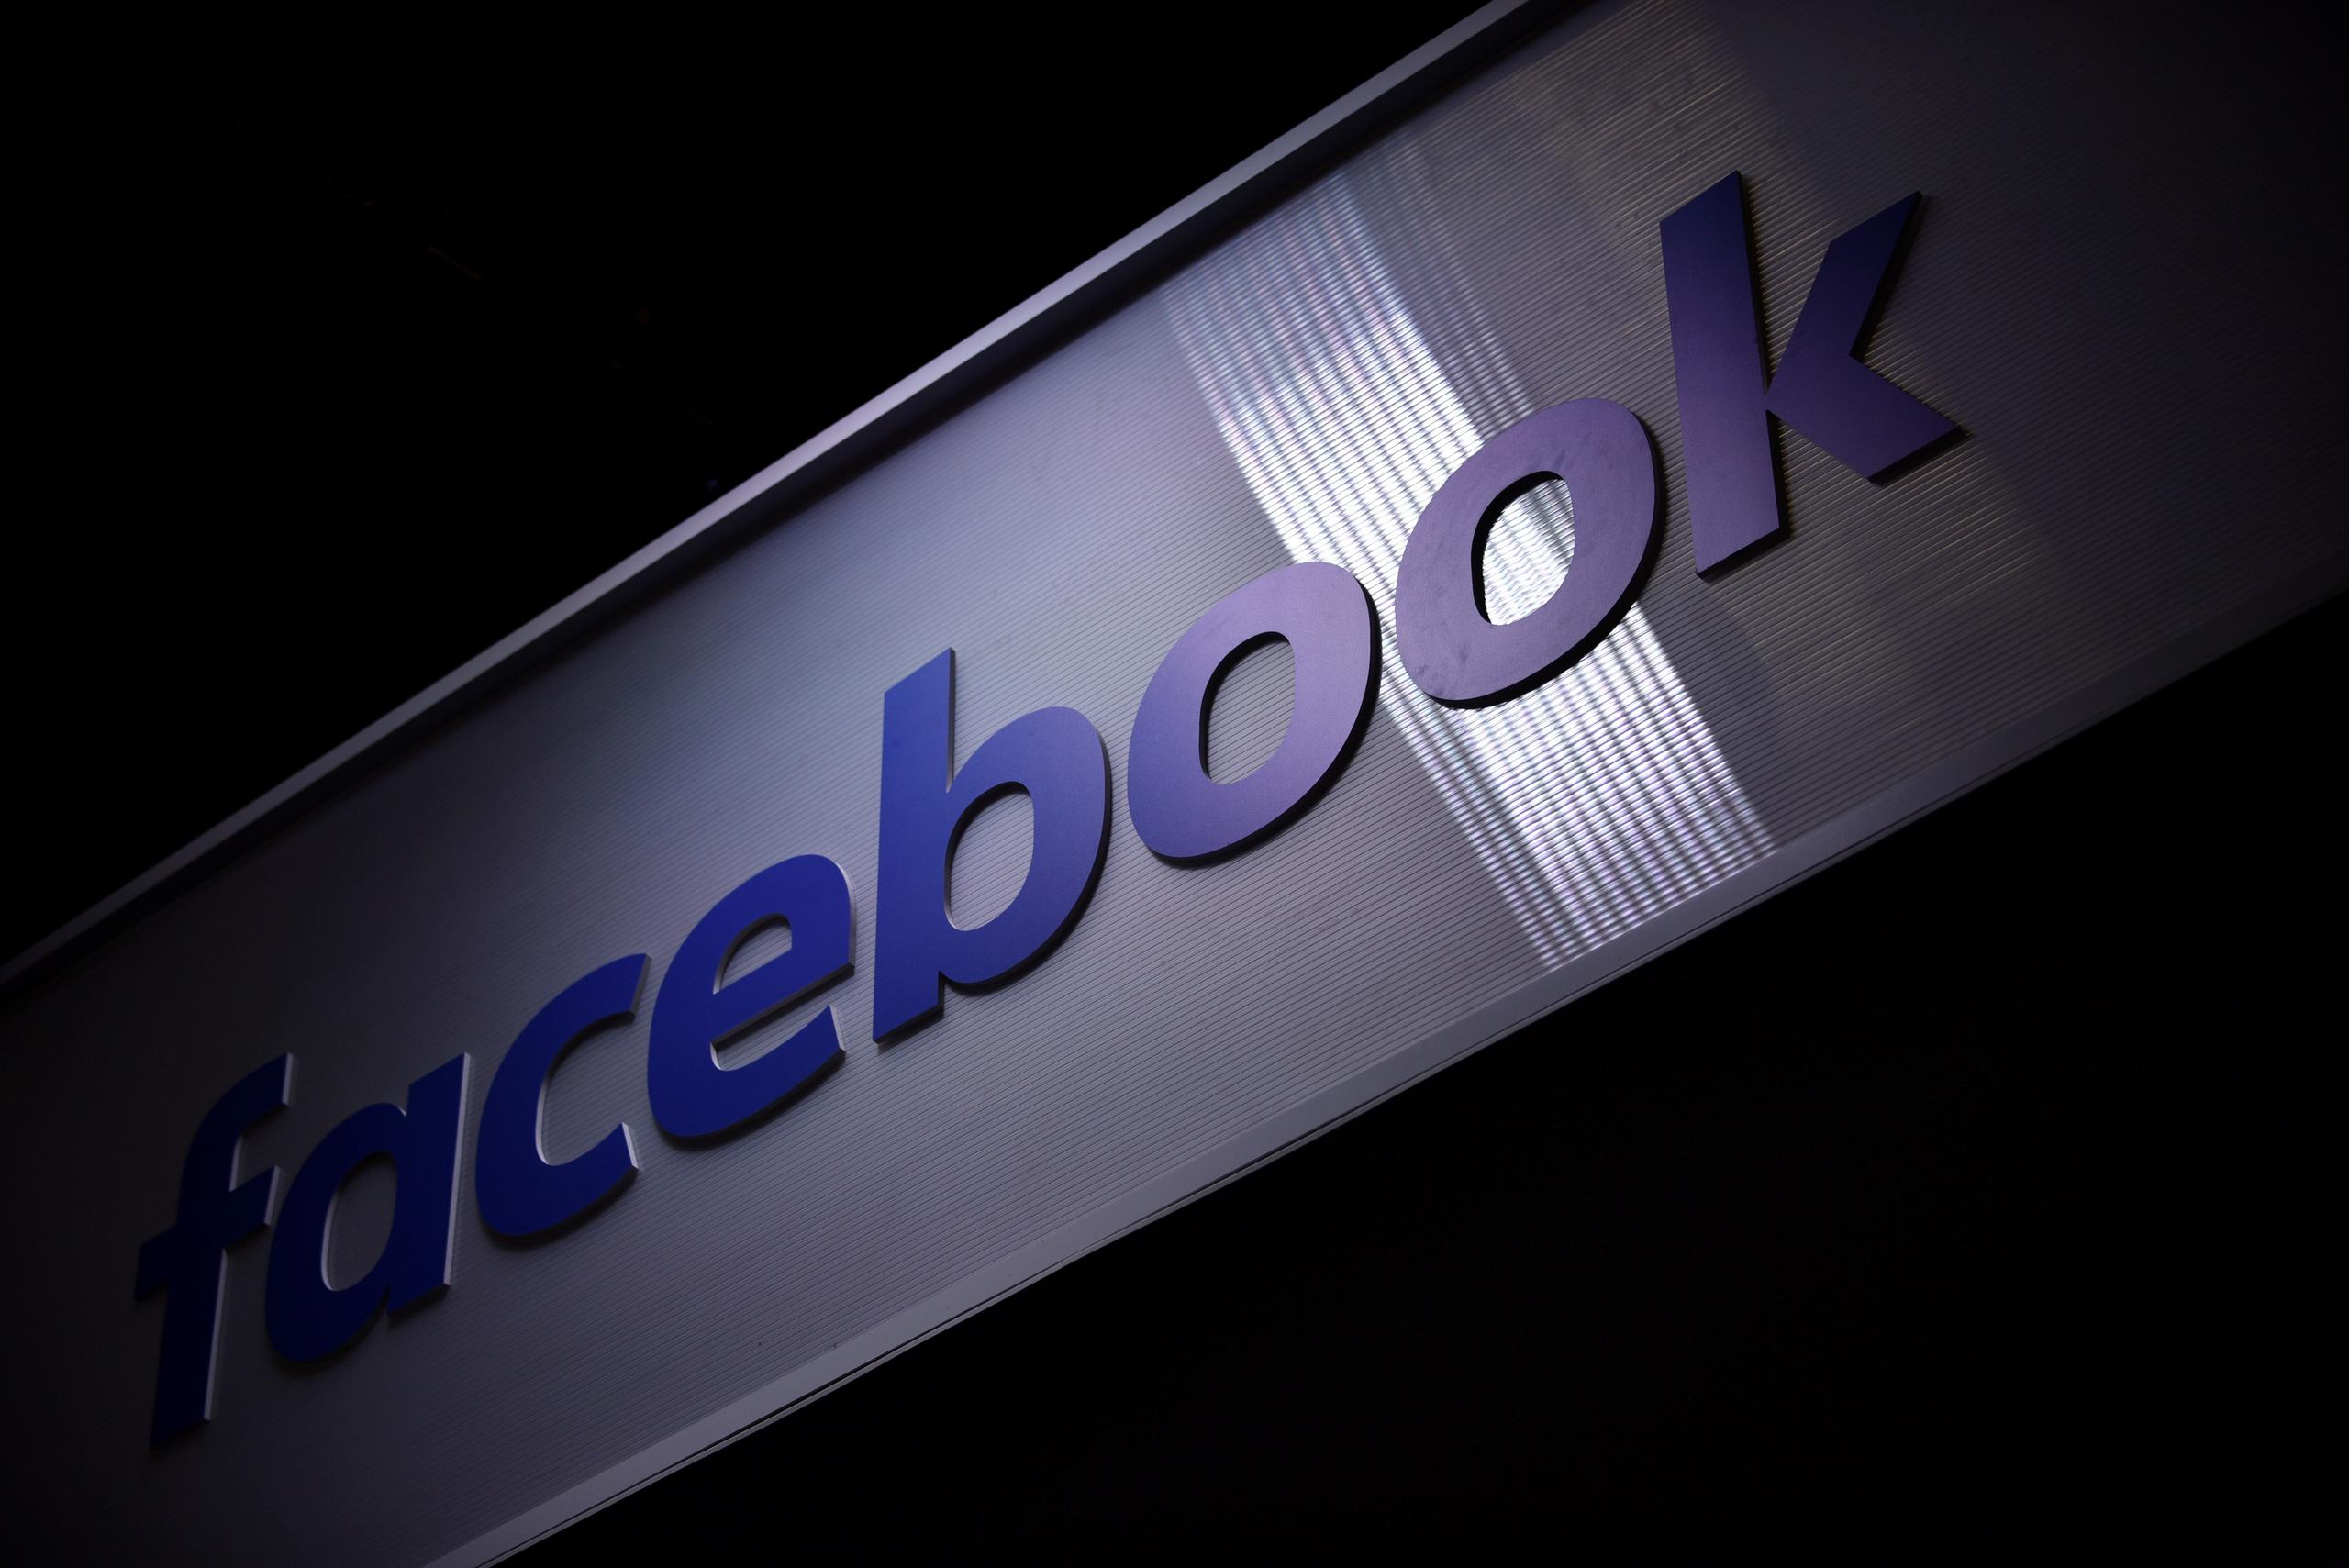 Un portavoz de Facebook señaló en un comunicado que “siempre estamos desarrollando nuevos y mejores servicios para satisfacer la cambiante demanda de la gente que utiliza Facebook”.